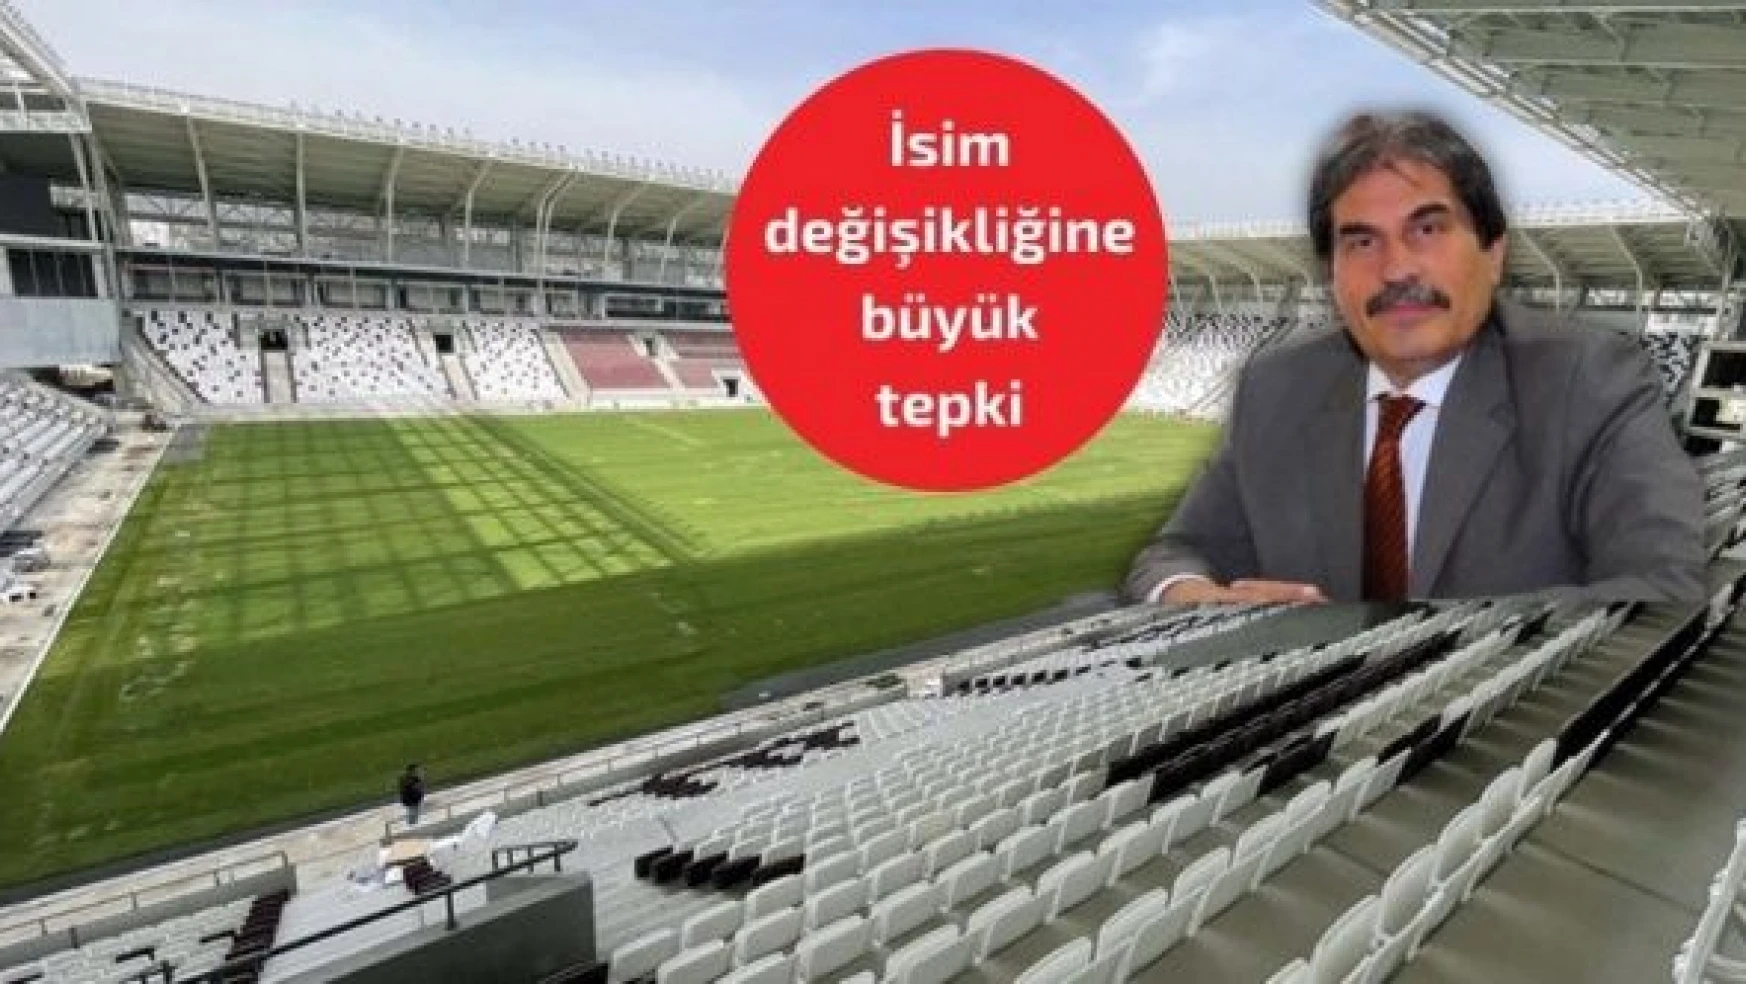 CHP'den, Elazığ Stadyumu'ndaki isim değişikliğine tepki